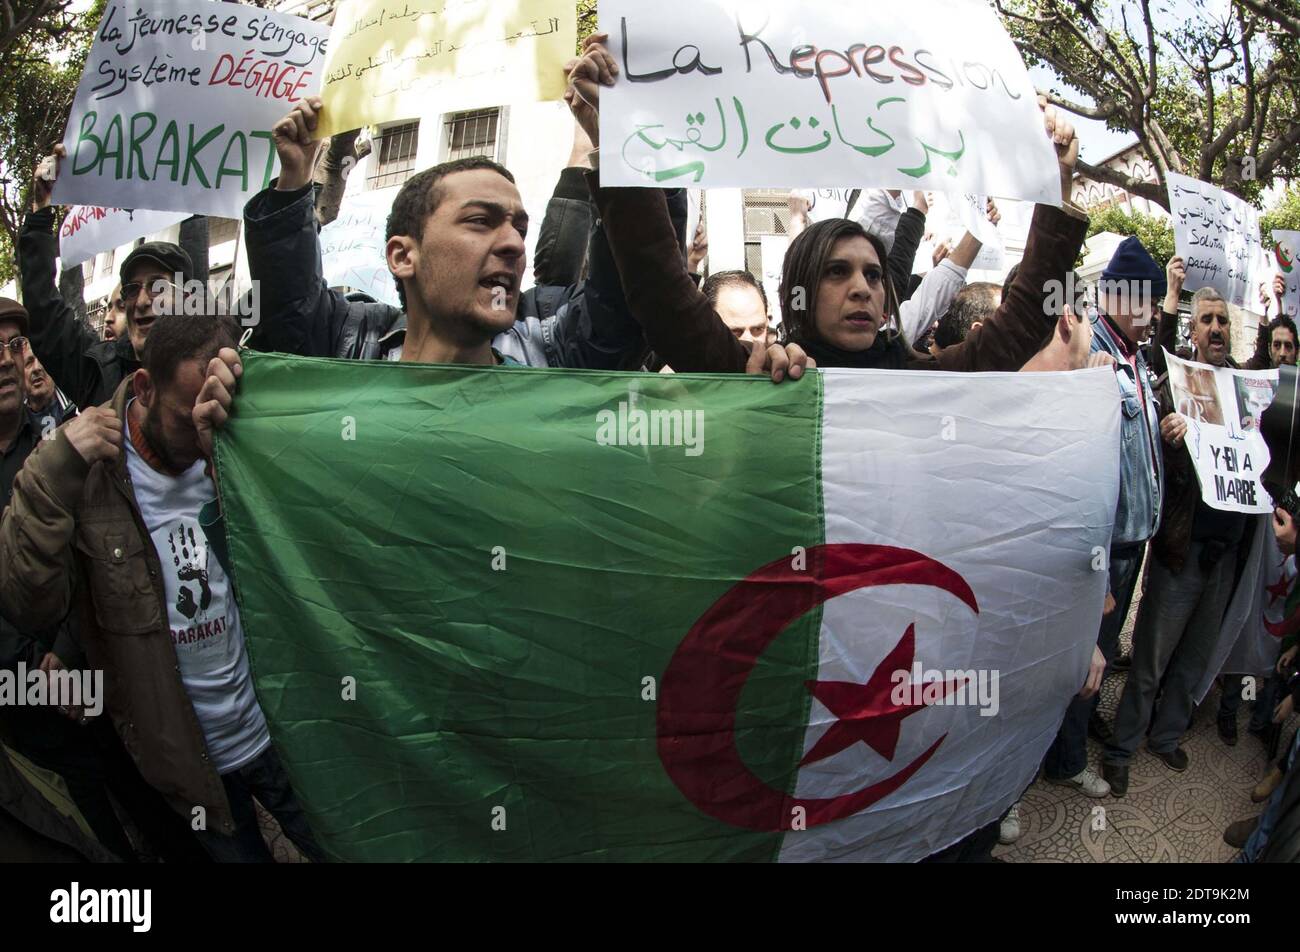 I sostenitori algerini di un movimento chiamato Barakat (che significa ‘che è abbastanza’ in arabo), che si battono per la nuova leadership in Algeria, dimostrano di avere striscioni e gridano slogan contro l'attuale presidente algerino Bouteflika Abdelaziz che si è impegnato per un quarto mandato nelle elezioni del 17 aprile, al di fuori della scuola centrale nel centro di Algeri il 27 marzo, 2014. La decisione del leader di 77 anni di cercare la rielezione nonostante i gravi problemi di salute, che lo hanno confinato all'ospedale di Parigi per tre mesi l'anno scorso, ha suscitato pesanti critiche non solo nelle fila dell'opposizione, ma anche da alcuni all'interno del regime Foto Stock